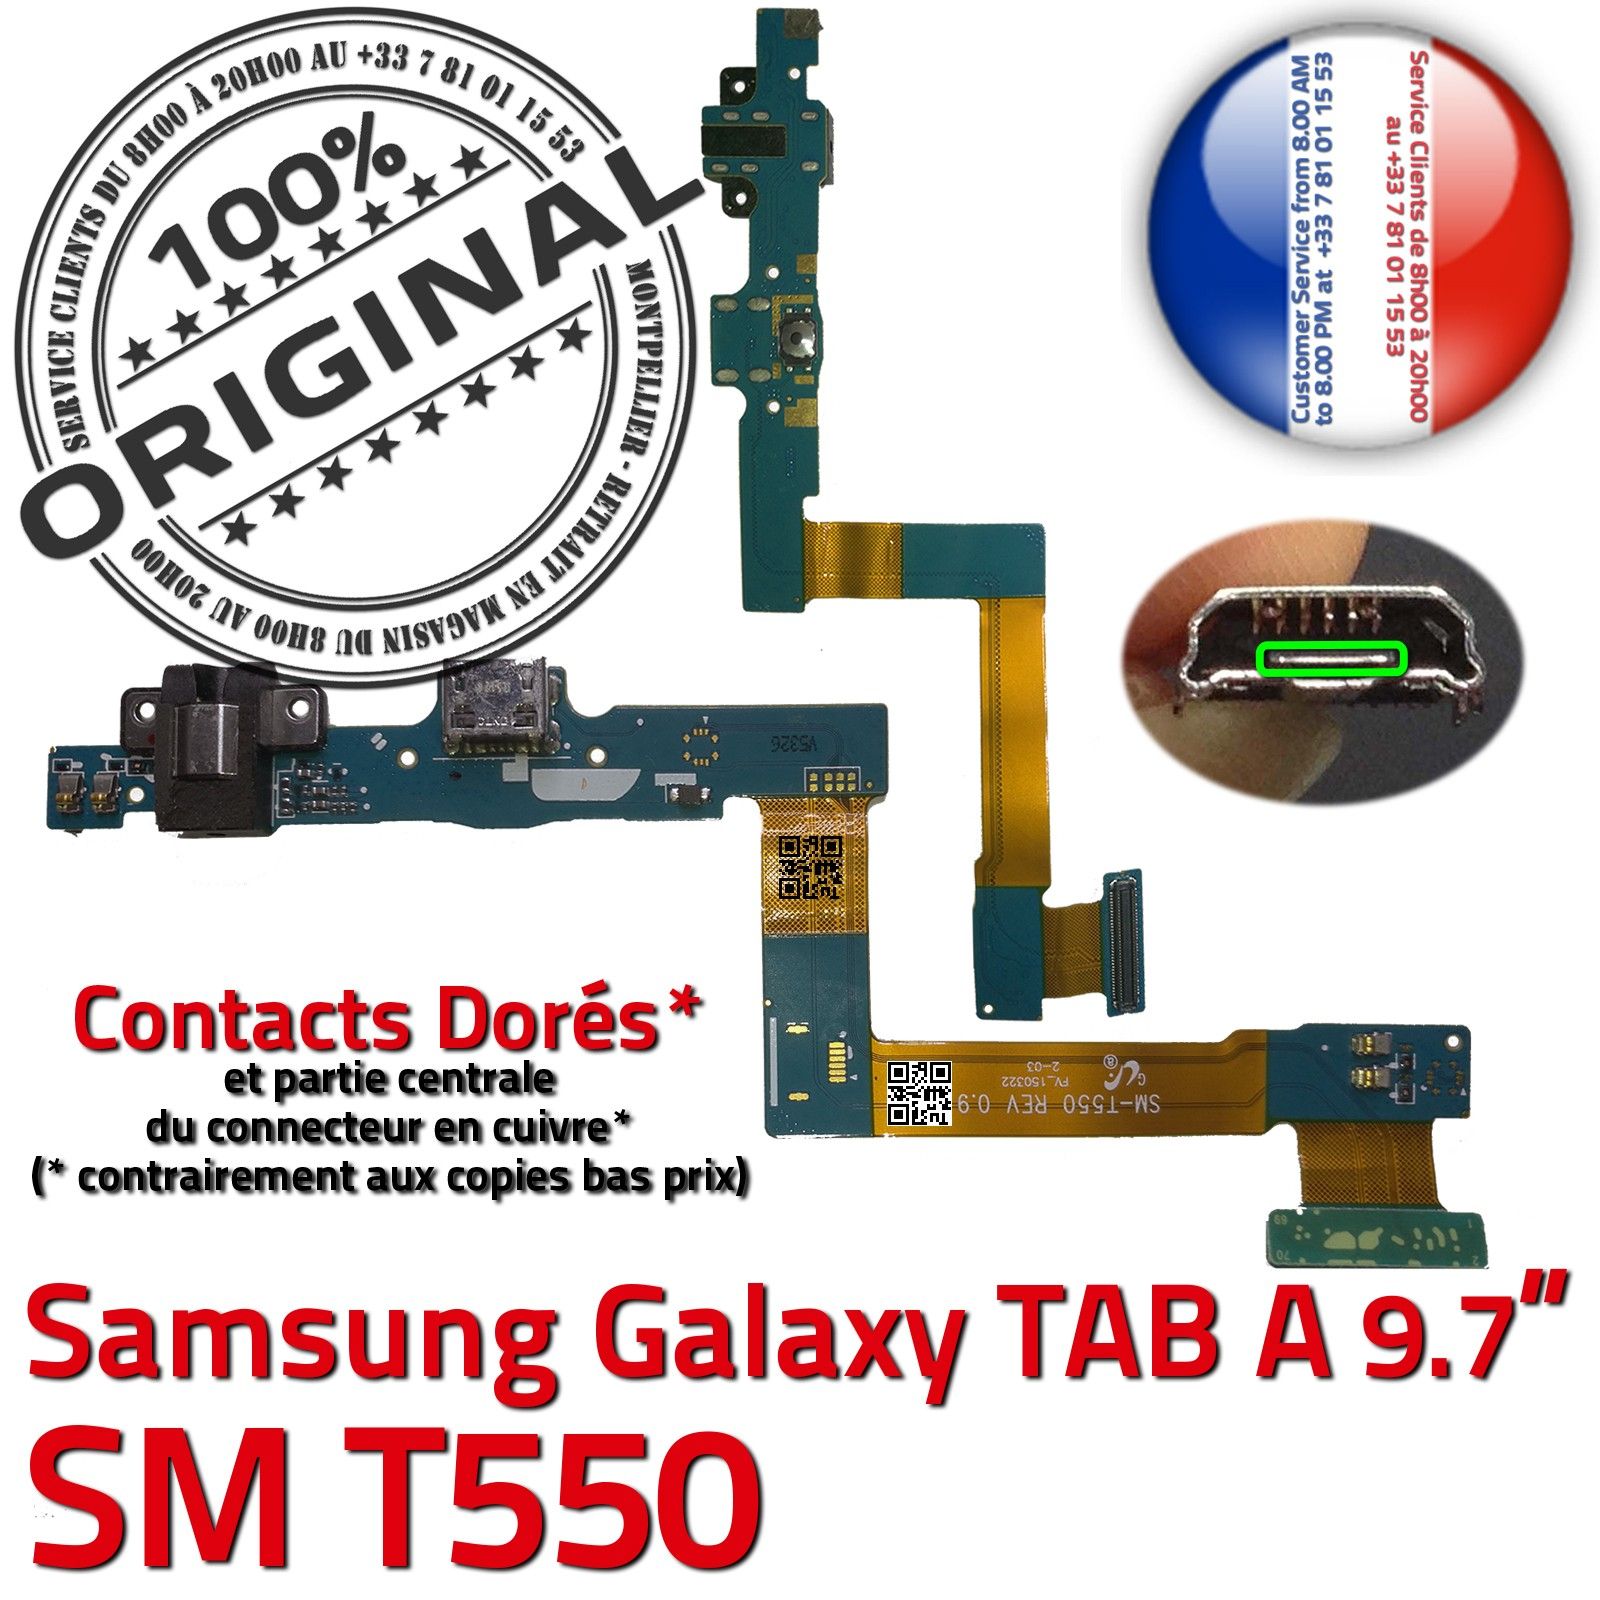 ORIGINAL Samsung Galaxy TAB A SM T285N Connecteur de charge à souder Micro  USB Pins Dorés Dock Prise Connector Chargeur 7 inch